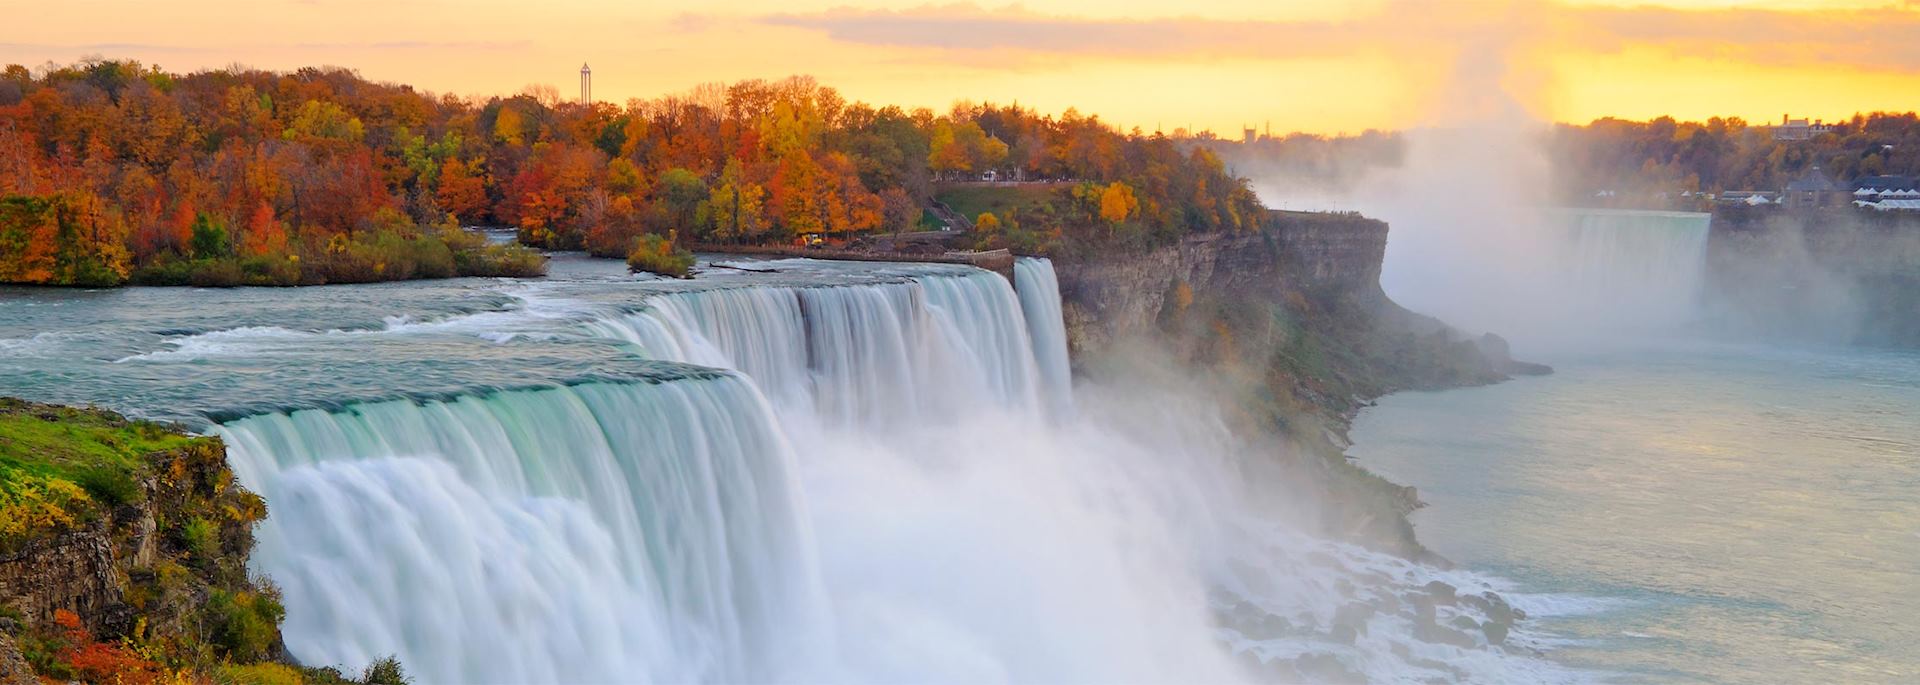 Niagara Falls in autumn